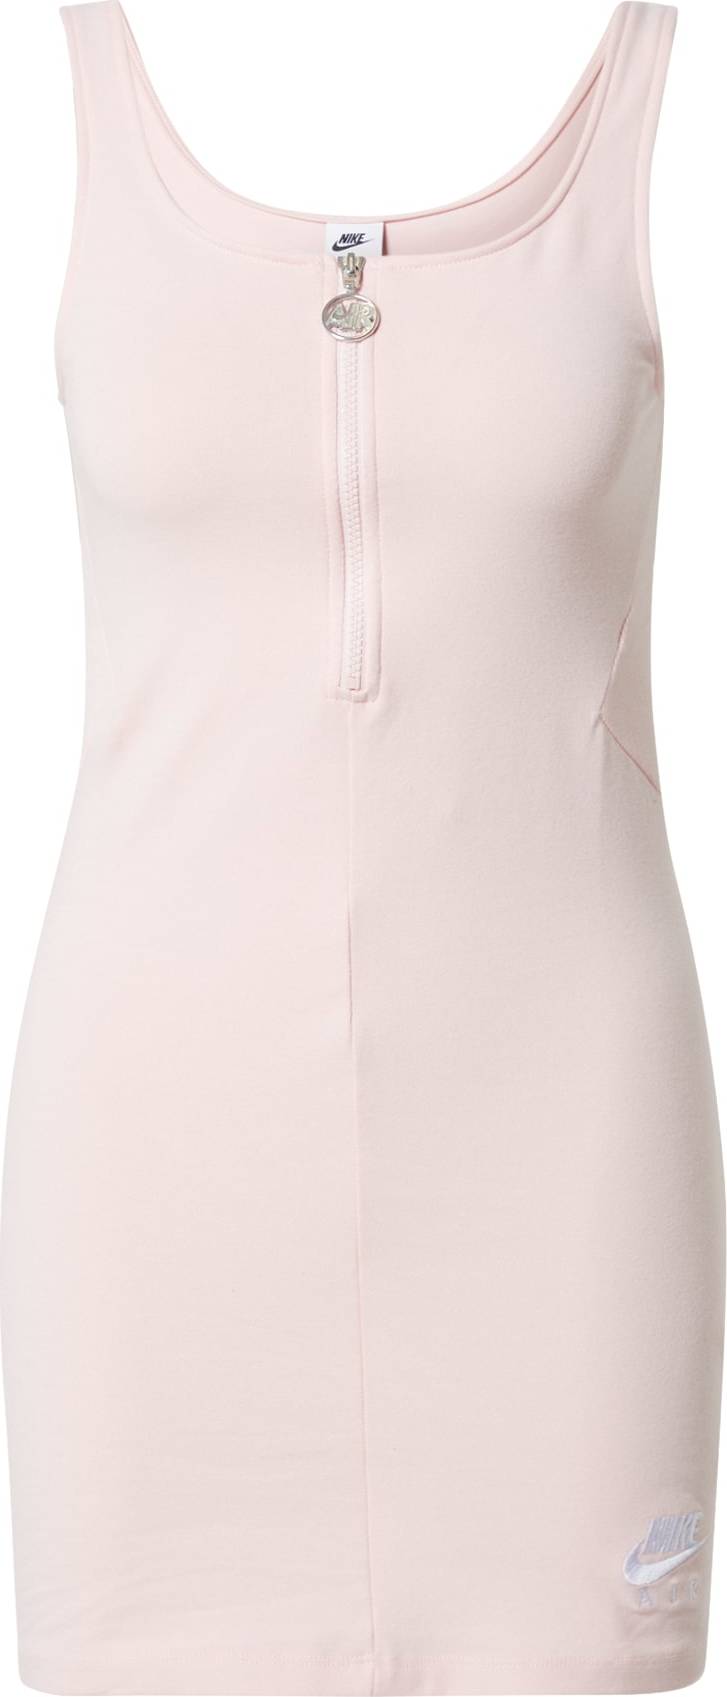 Nike Sportswear Šaty pastelově růžová / bílá